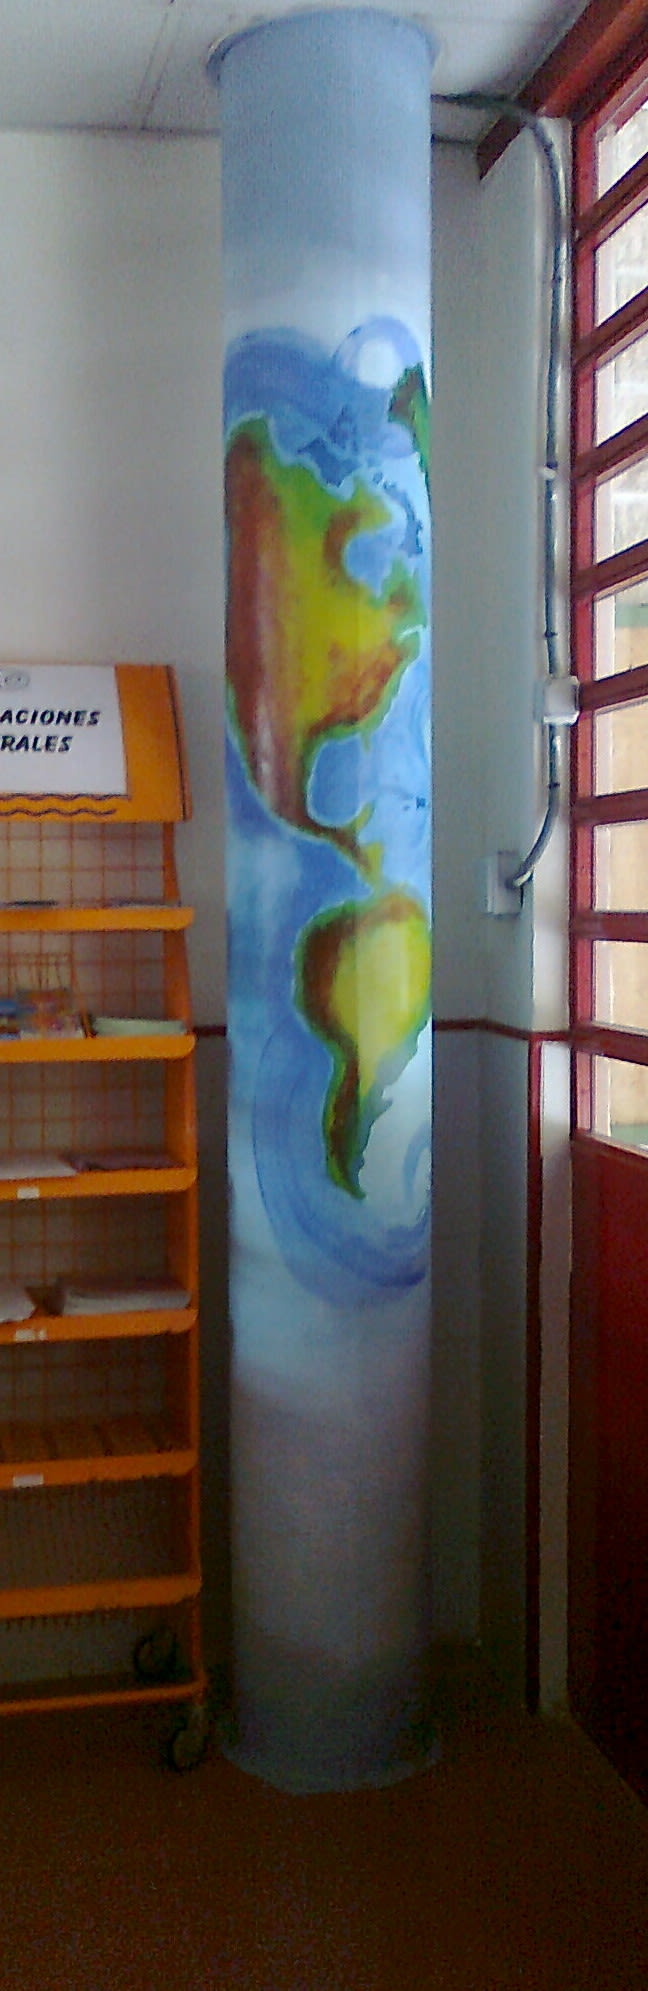 Pintura Mural en el colegio "Antonio Osuna"Tres Cantos 2011 44